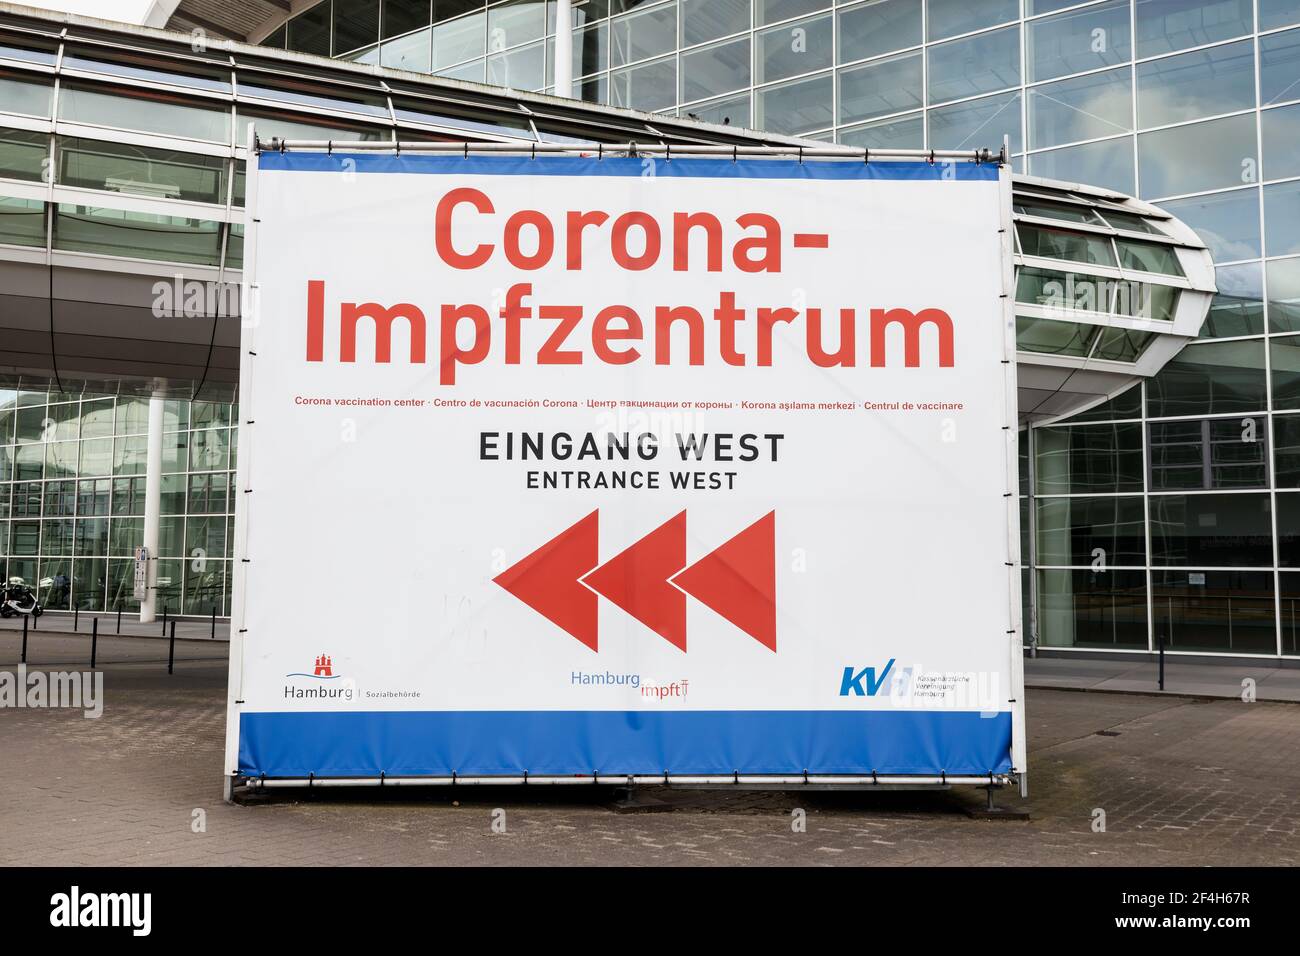 Señal que muestra las direcciones para el centro de vacunación Corona, entrada oeste (en alemán: 'Corona Impfzentrum, Eingang West') centro en Hamburgo Messehallen Foto de stock